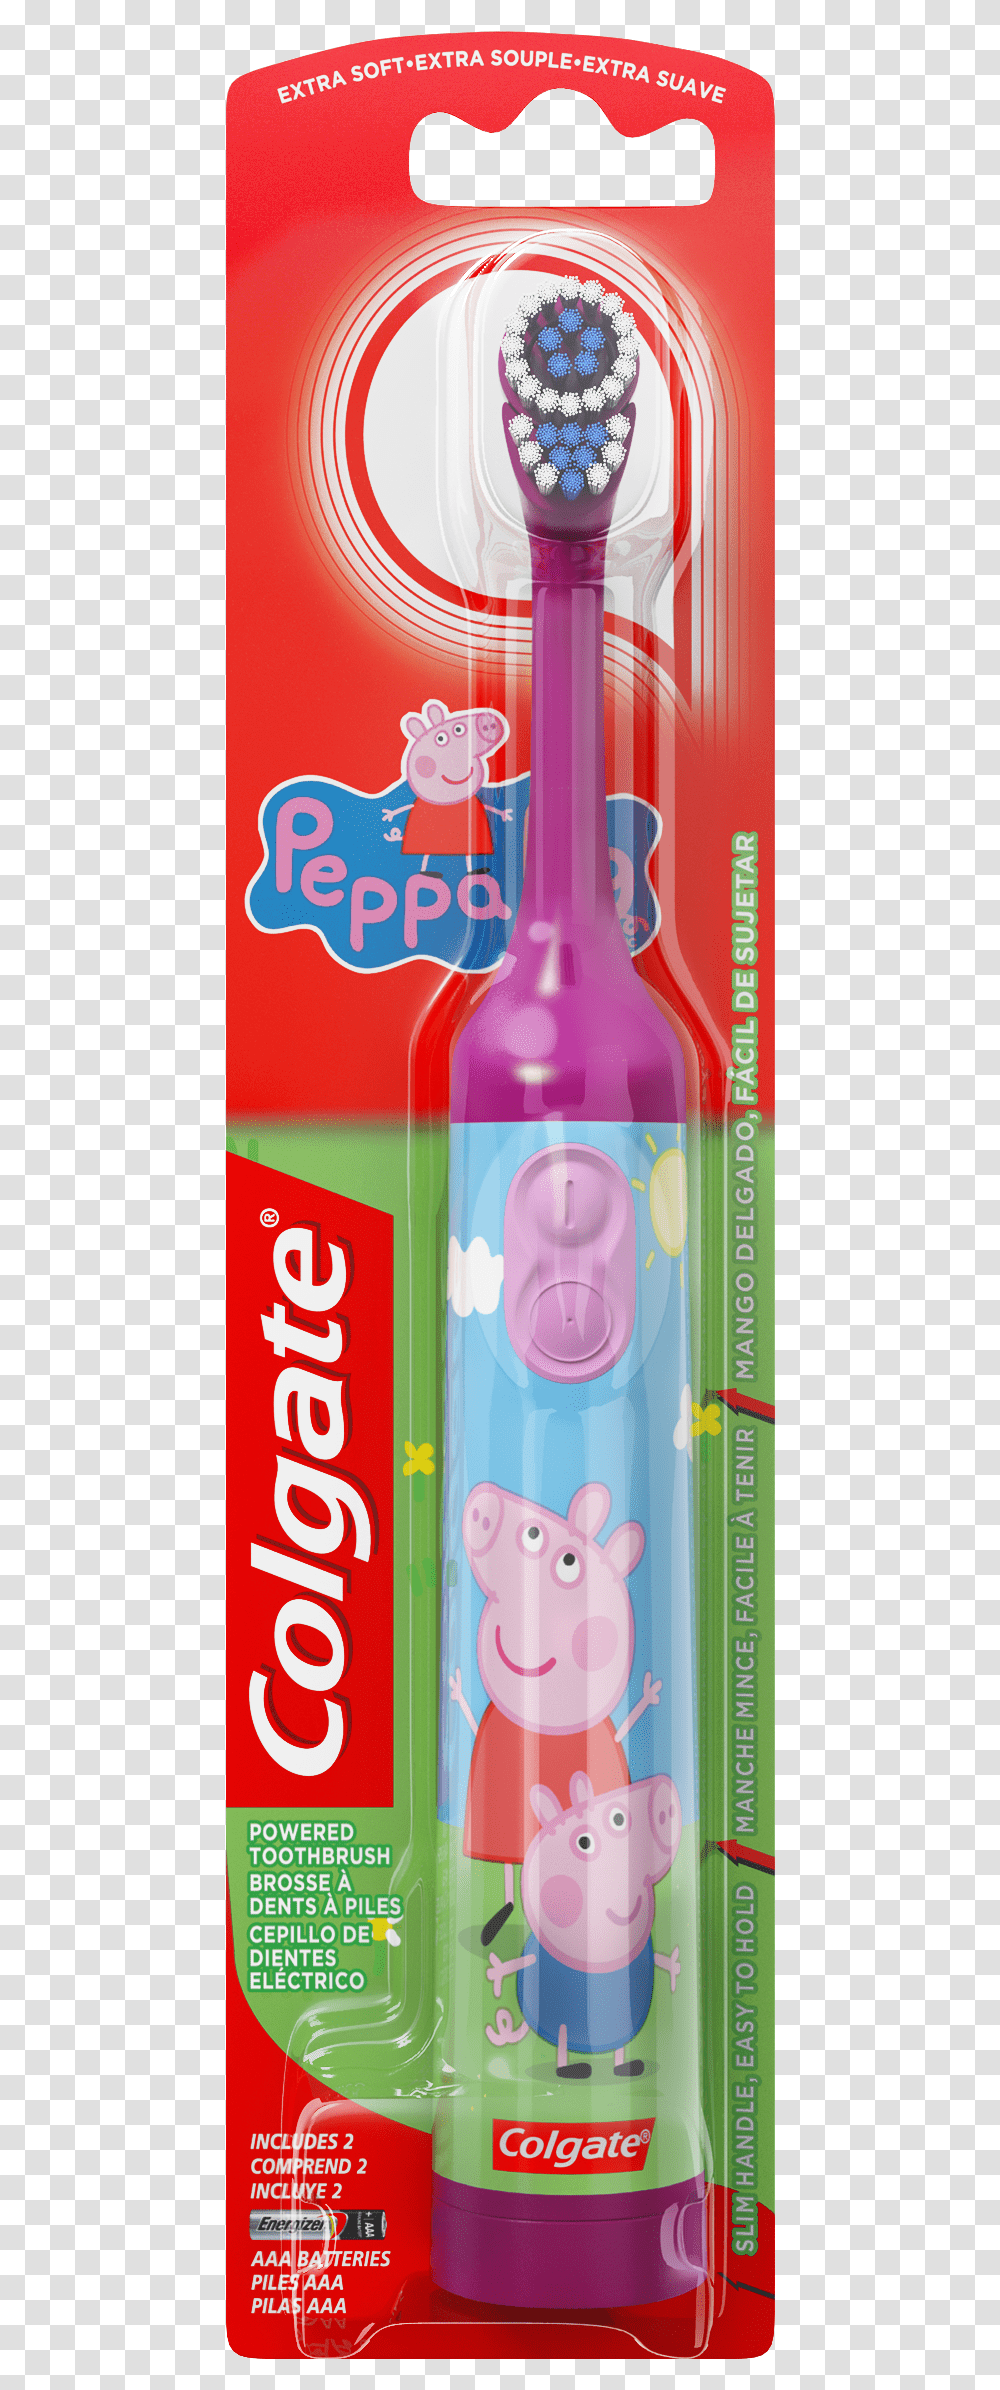 Colgate Peppa Pig Toothbrush, Bottle, Beverage, Drink, Pop Bottle Transparent Png